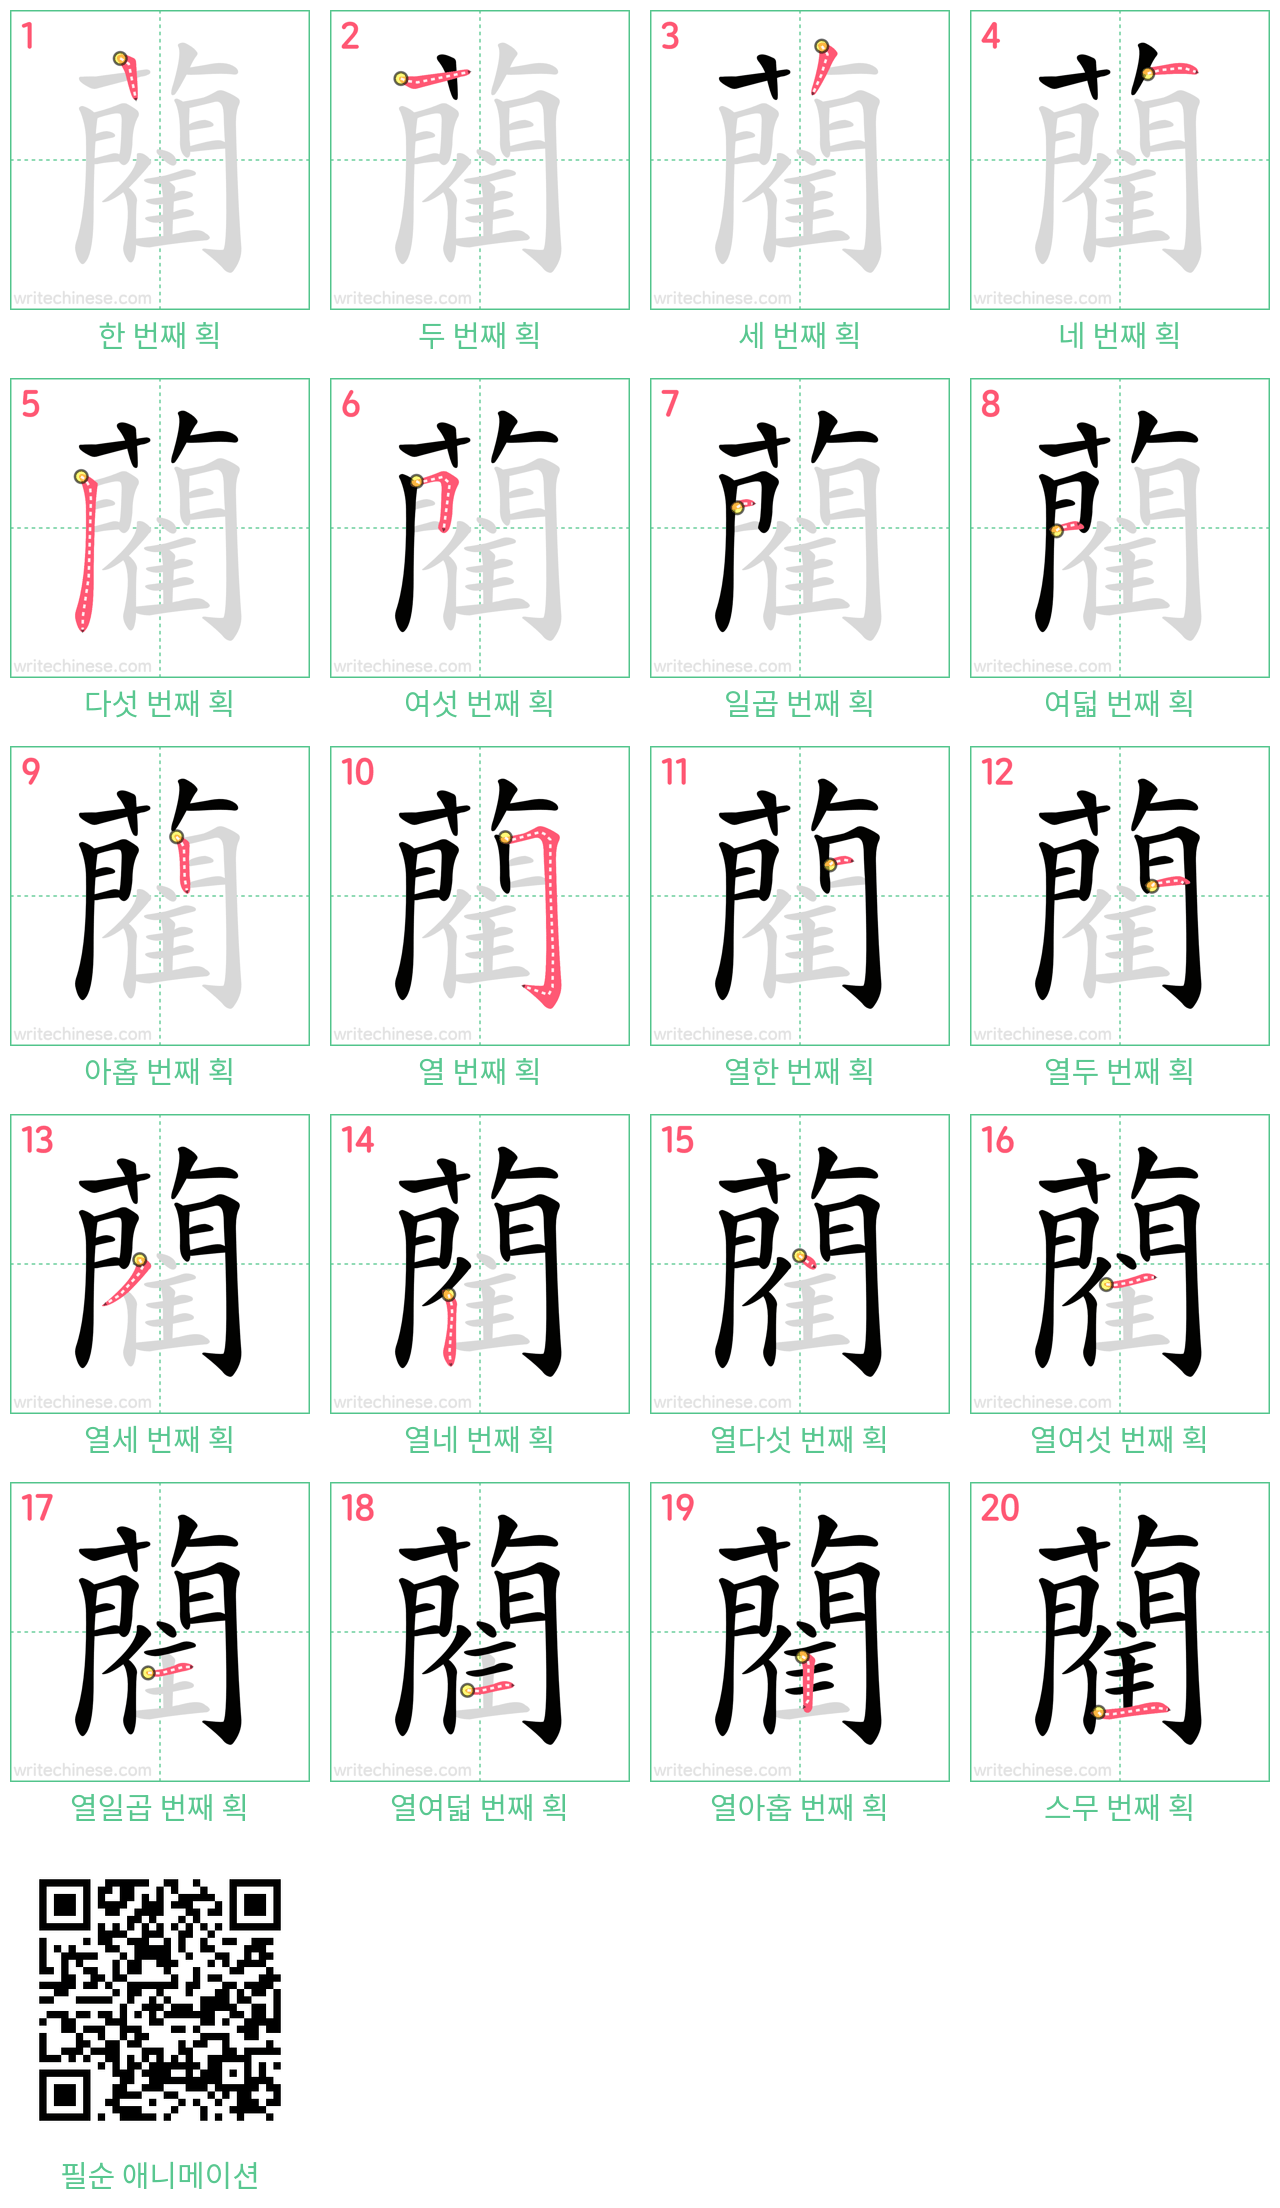 藺 step-by-step stroke order diagrams